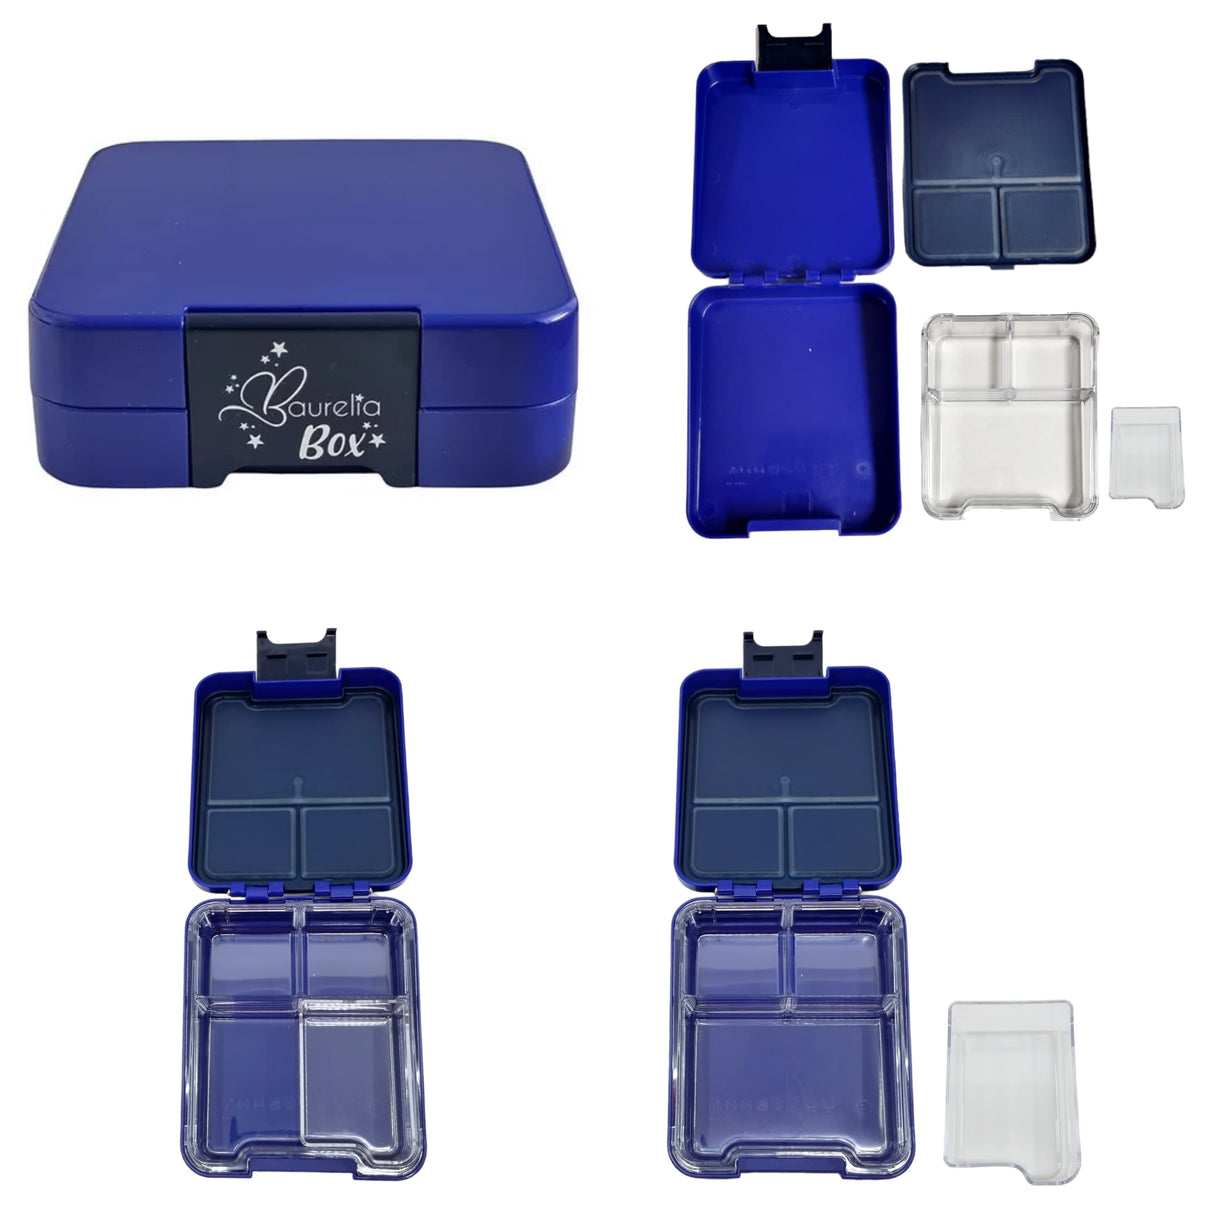 SET Znünibox und Thermosflasche Baurelia Box Midi mit Ion8 500ml Blau